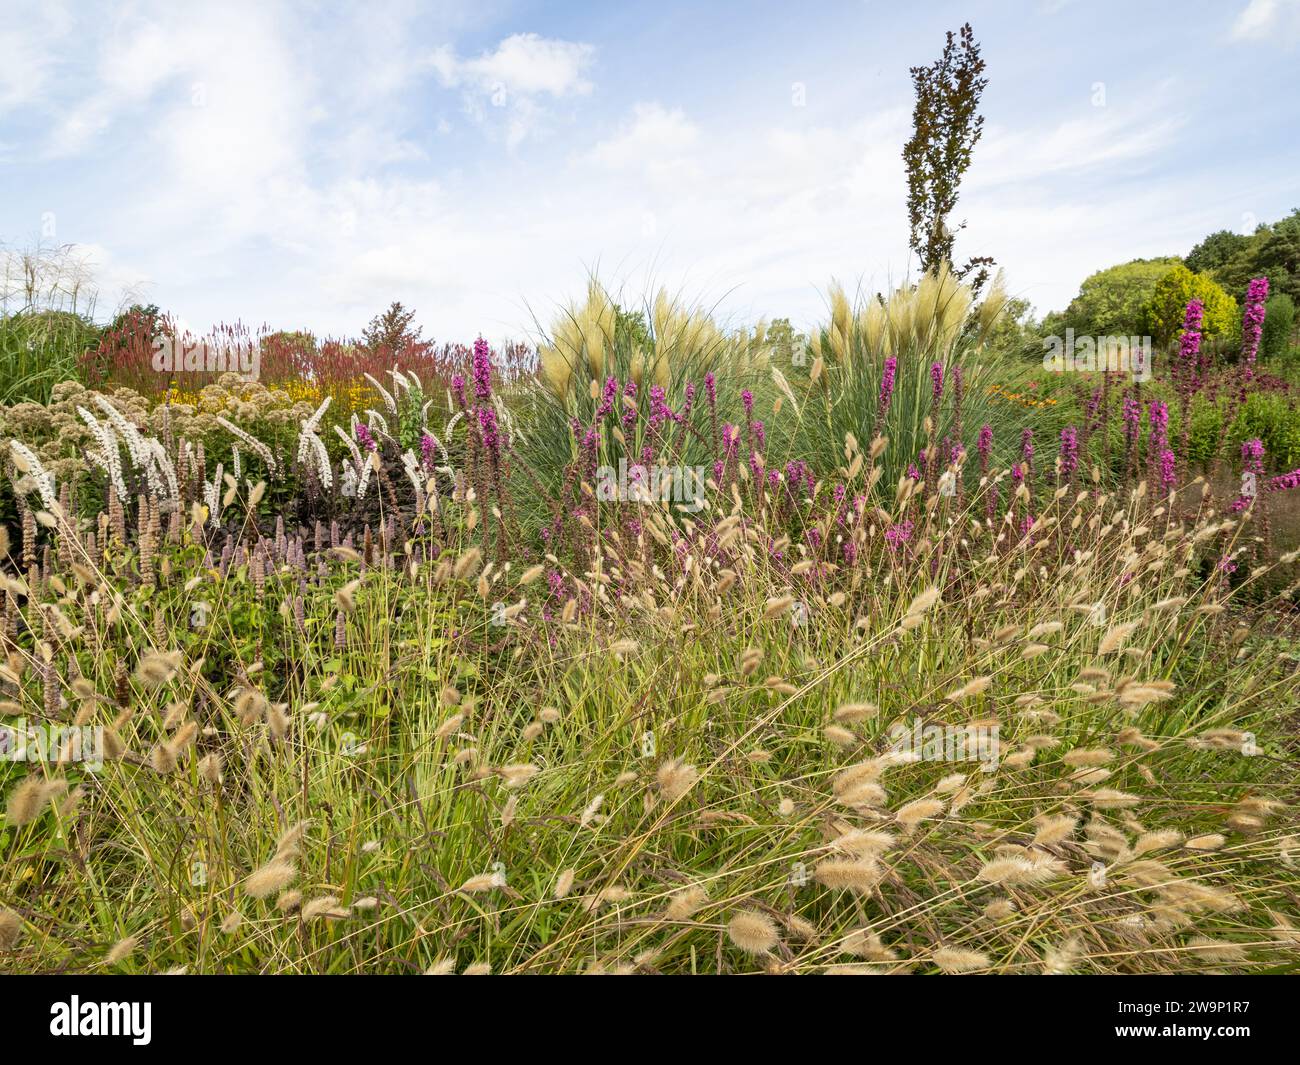 Bordure en herbe avec Pennisetum villosum au premier plan Banque D'Images